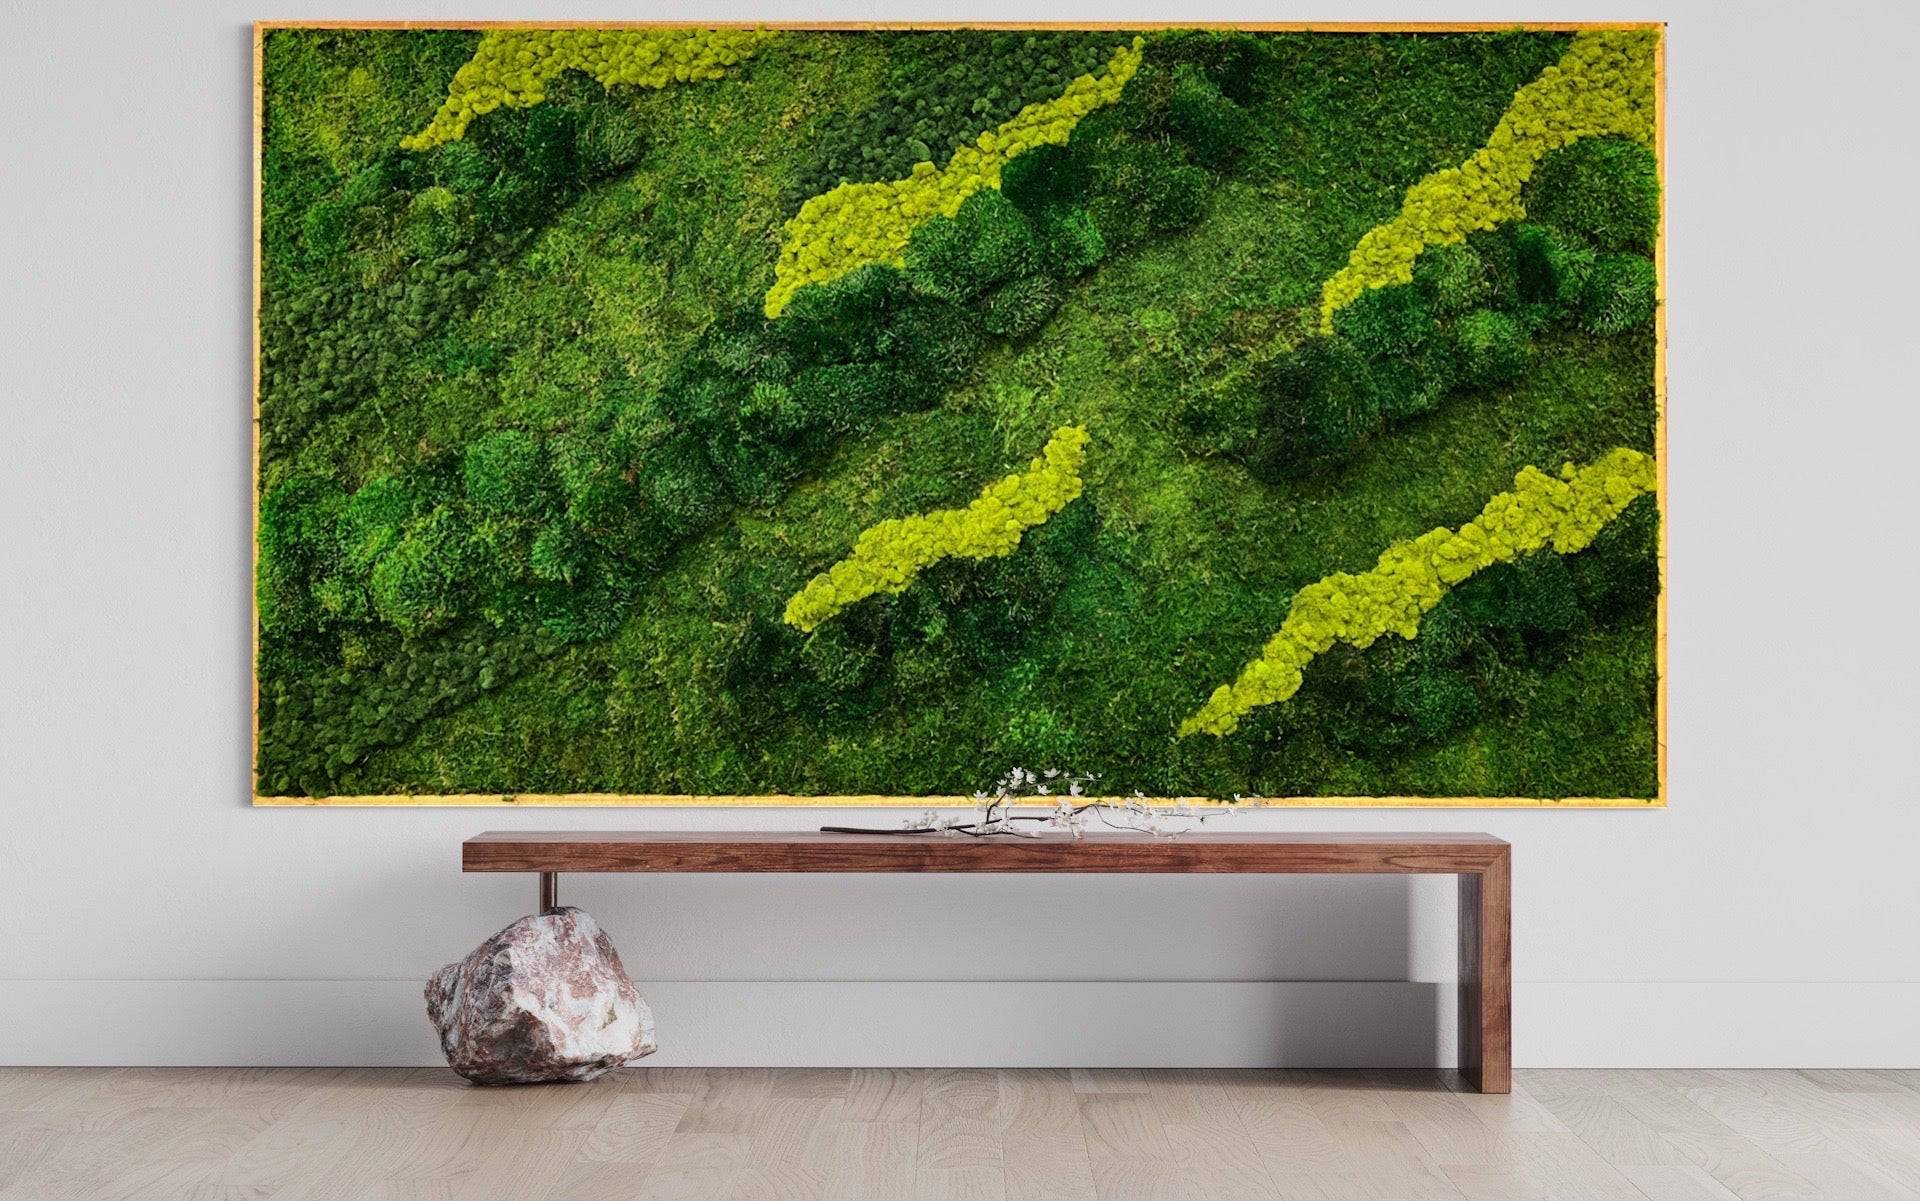 Small Moss Wall Art. Moss Wall. Preserved Moss. Wall Garden. Art